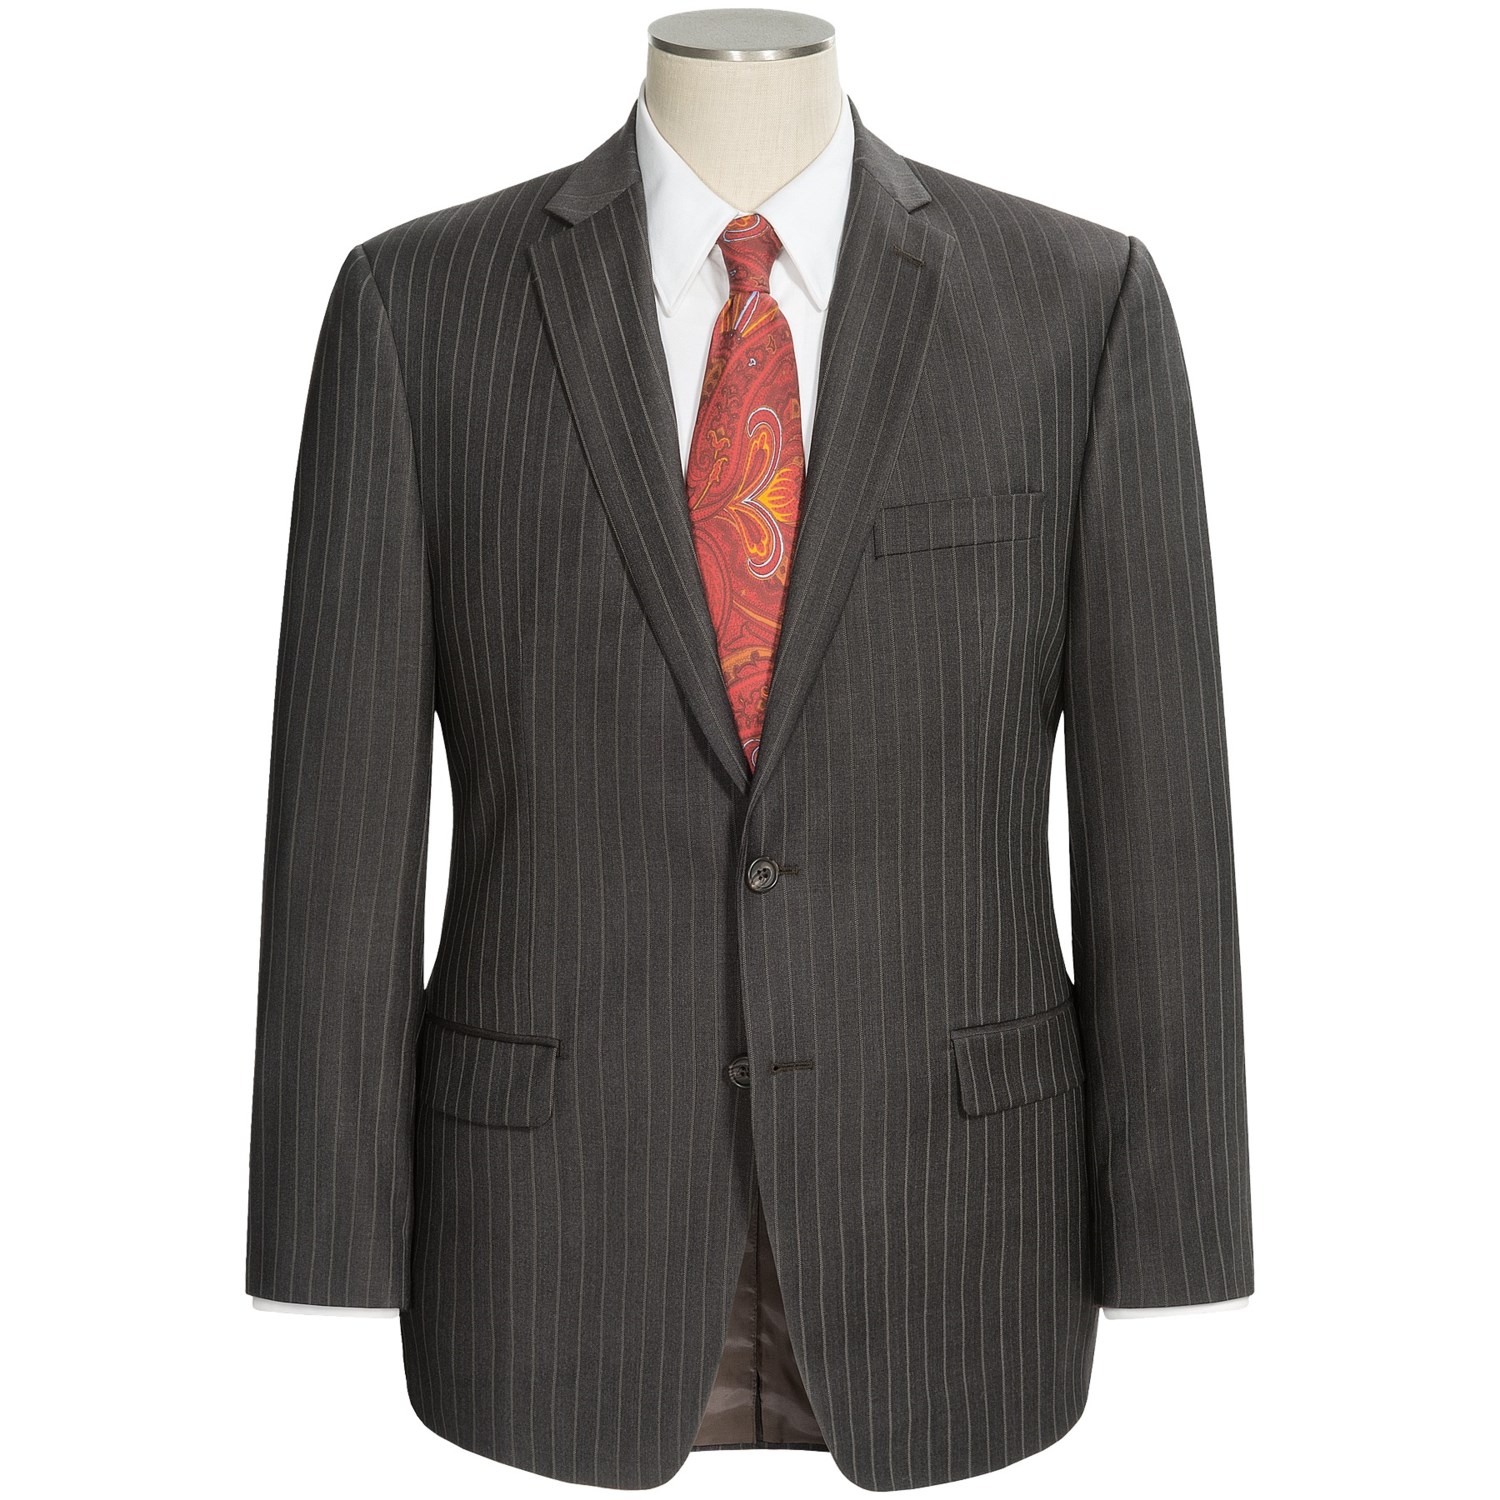 Lauren by Ralph Lauren Stripe Suit (For Men) 4838G